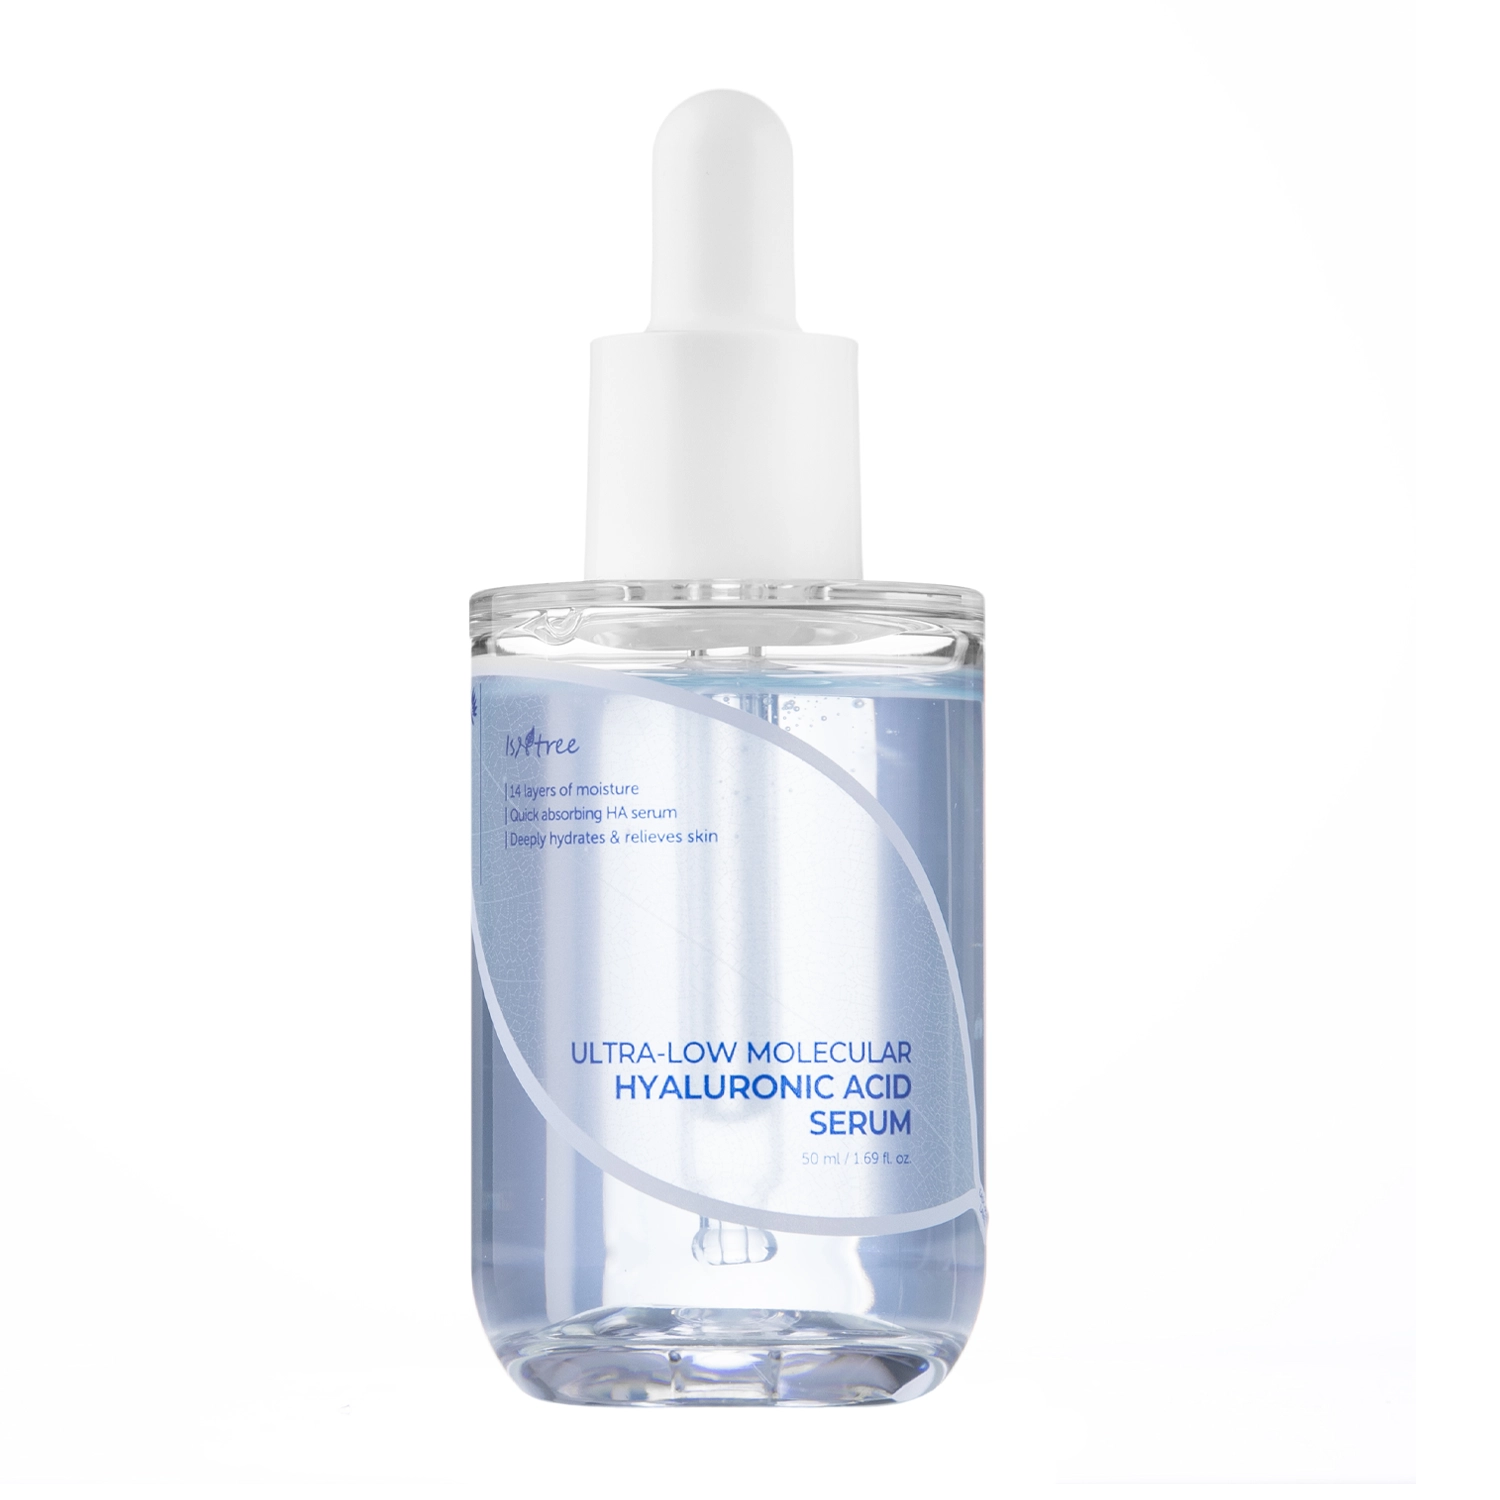 Isntree - Ultra-Low Molecular Hyaluronic Acid Serum - Зволожувальна сироватка для обличчя з гіалуроновою кислотою - 50ml